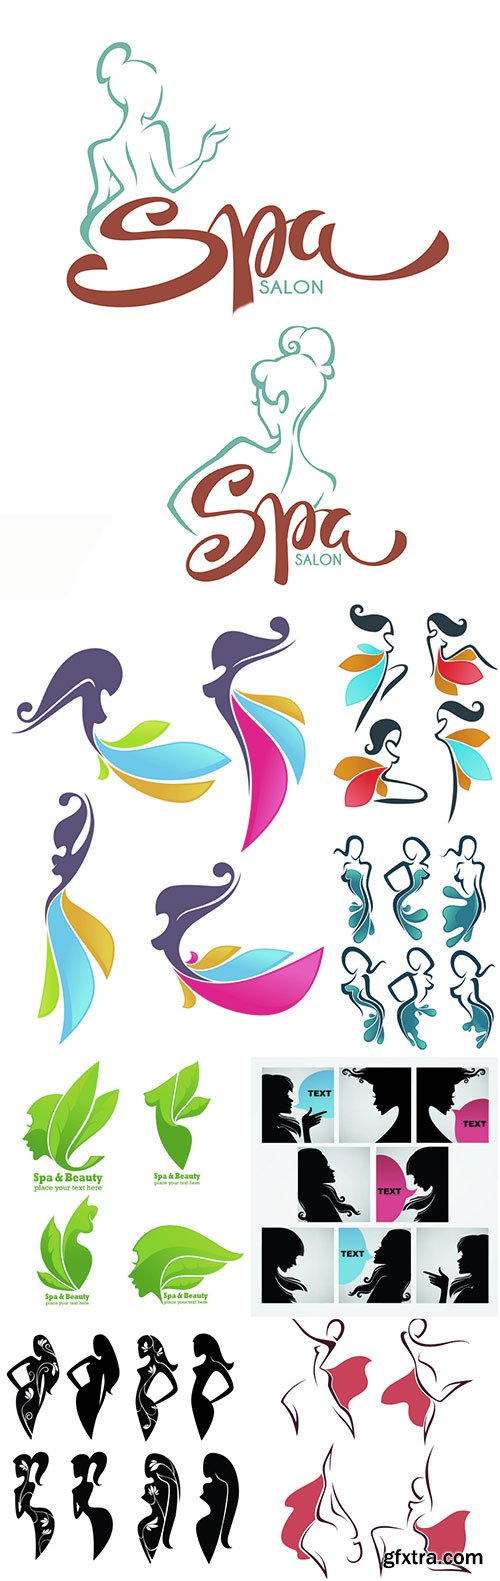 Spa salon and body care studio logo template